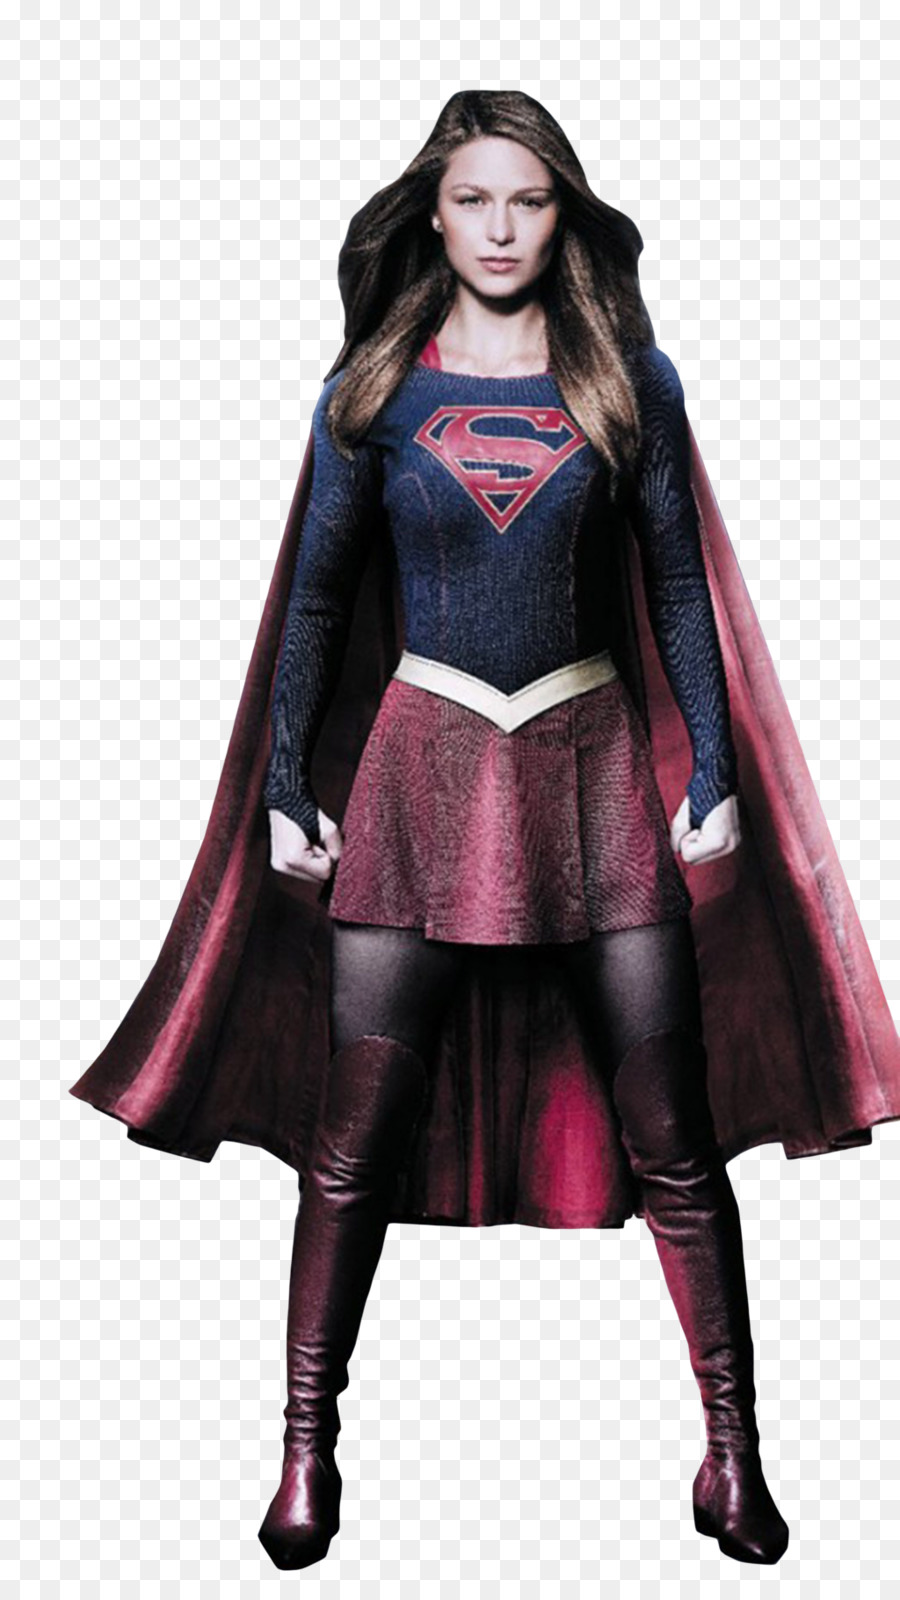 Supergirl Clark Kent Clip art - Supergirl PNG Transparent Images png download - 1024*1811 - Free Transparent Supergirl png Download.